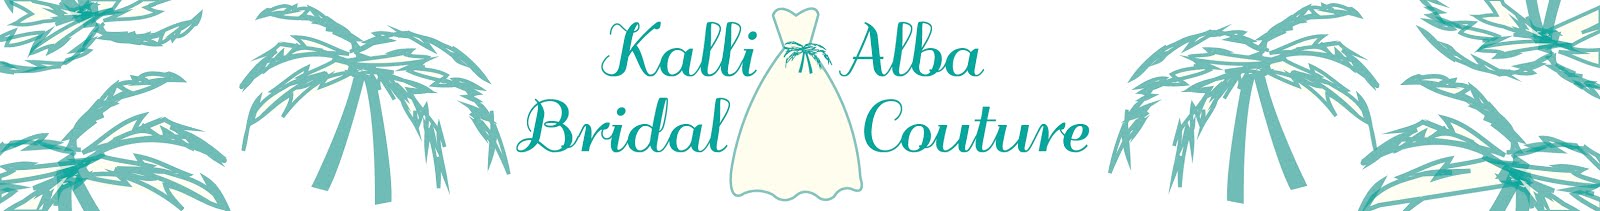 Kalli Alba Bridal Couture